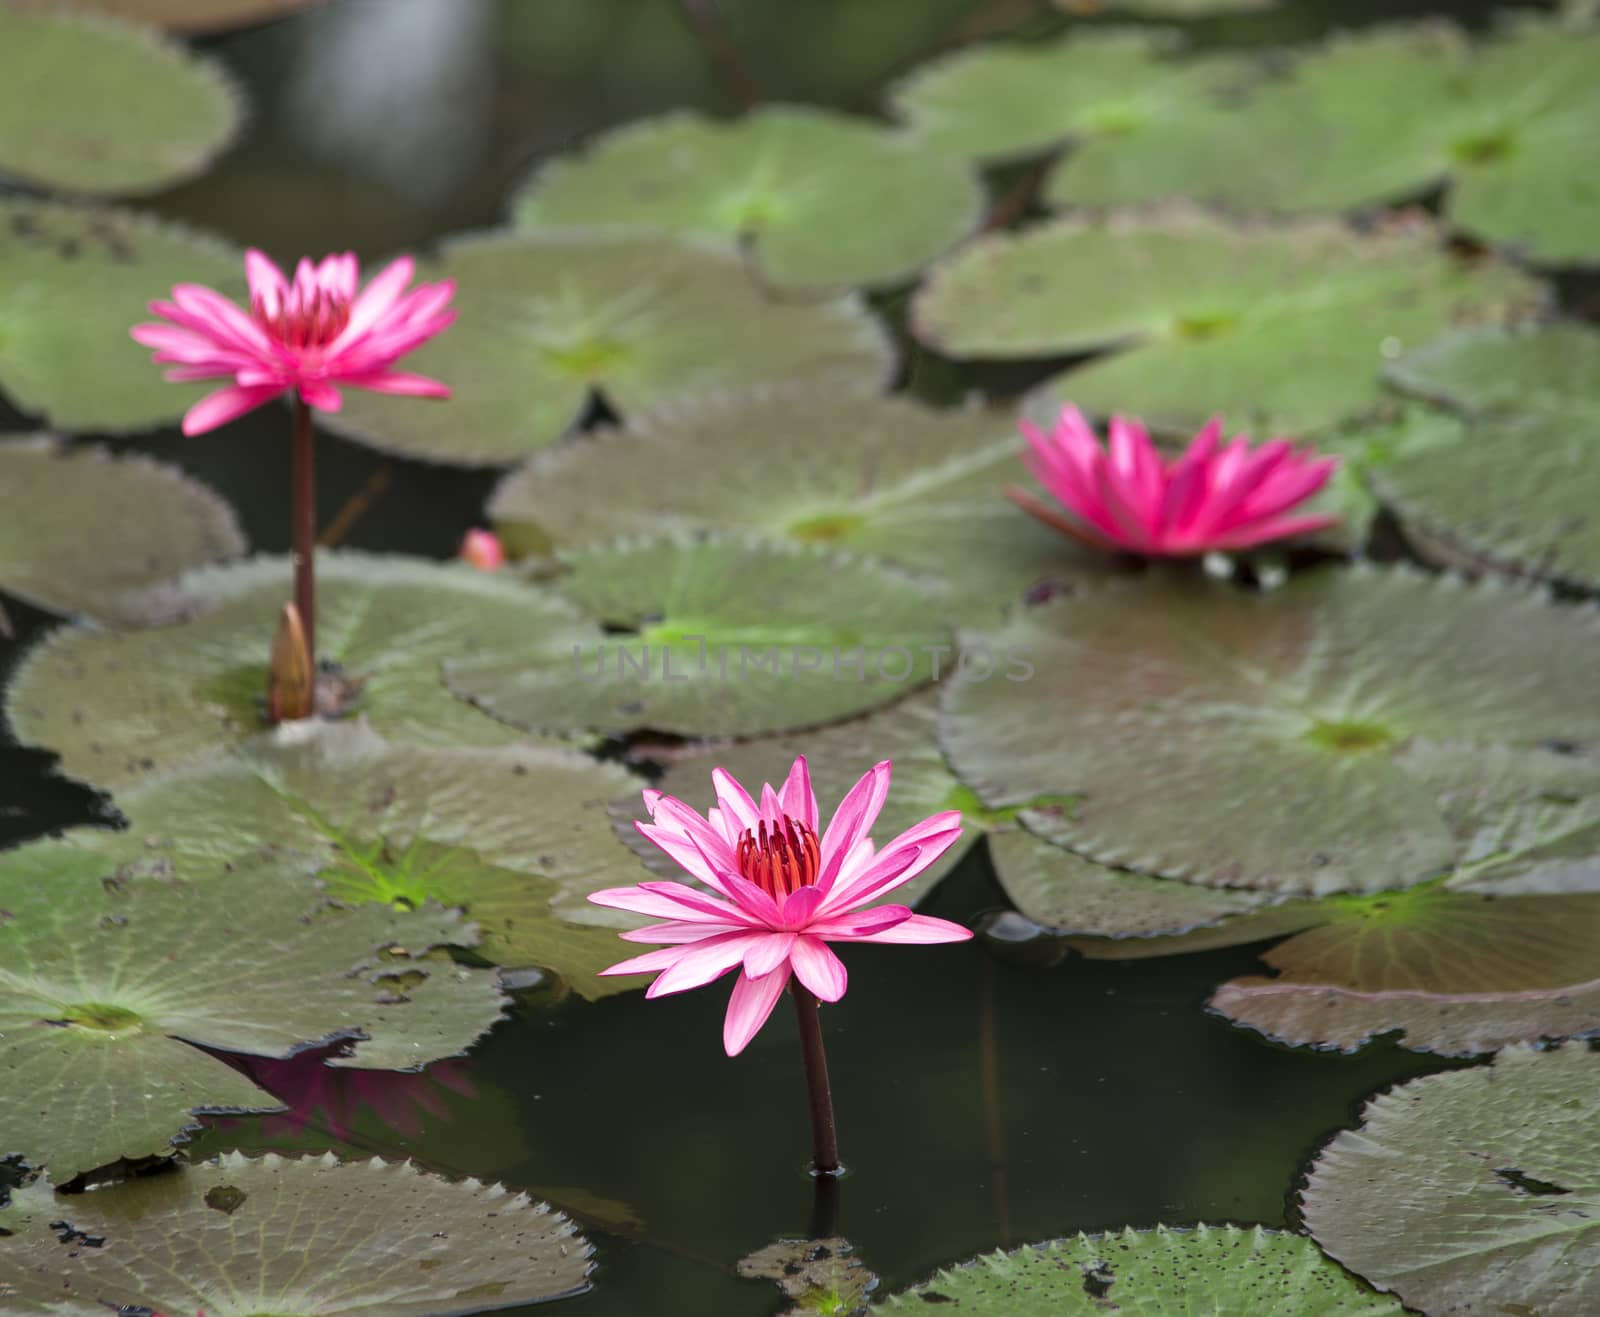 A blooming lotus flower